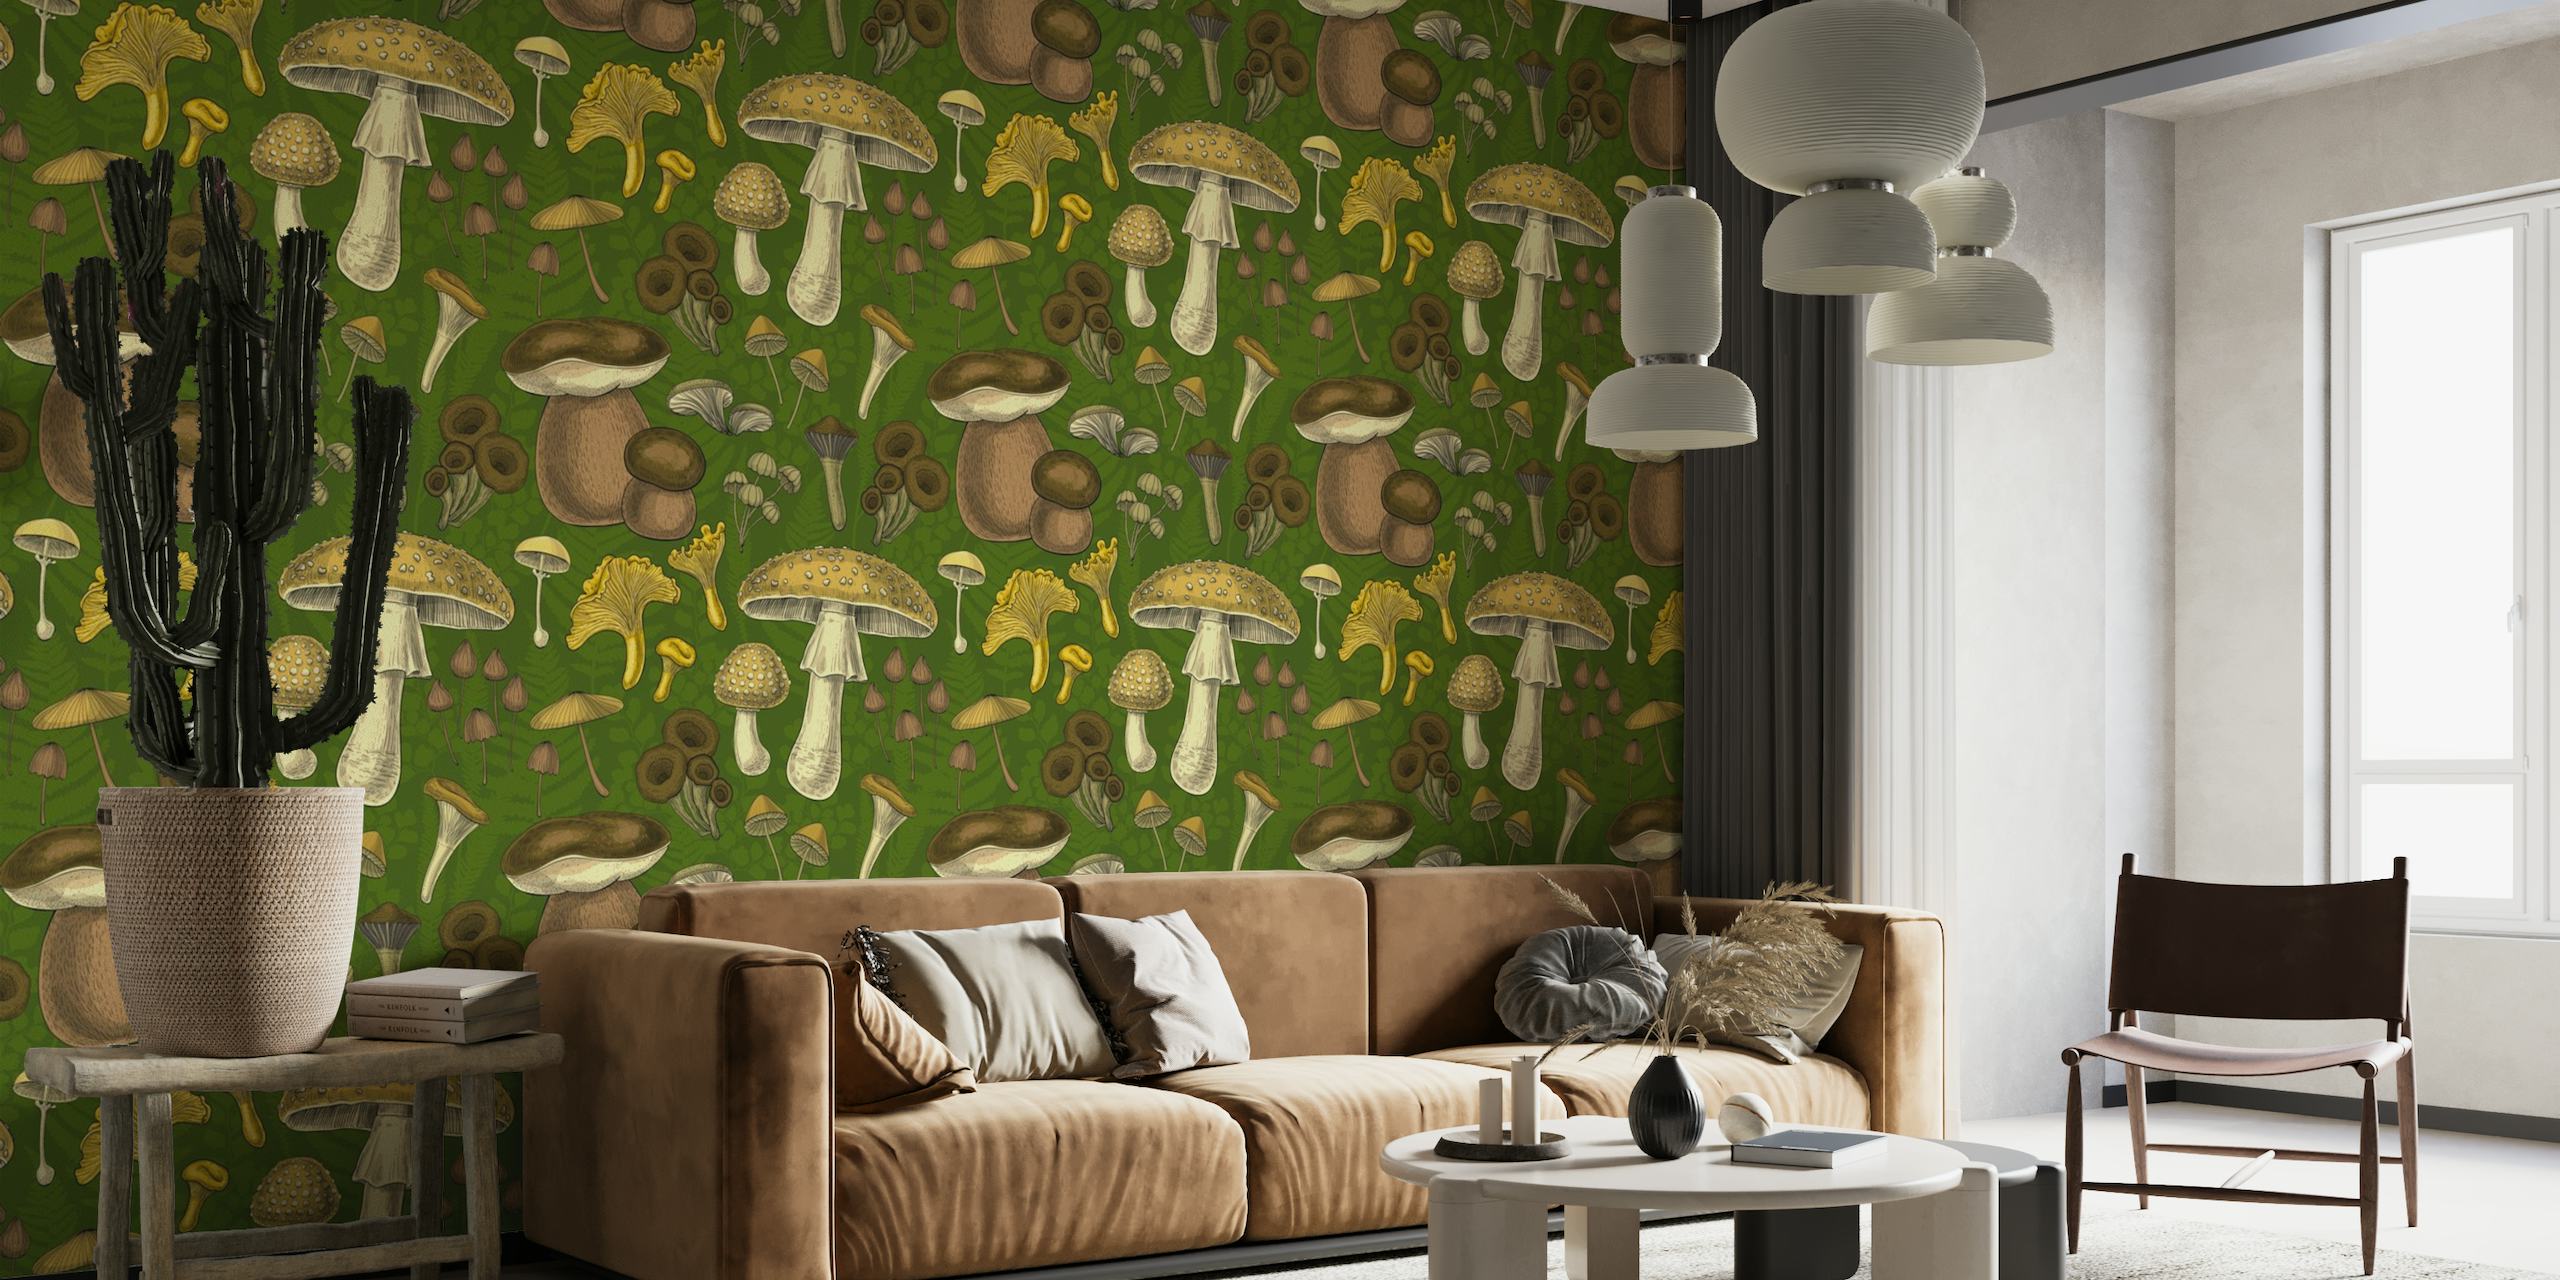 Papier peint illustratif avec une variété de champignons sauvages sur fond vert